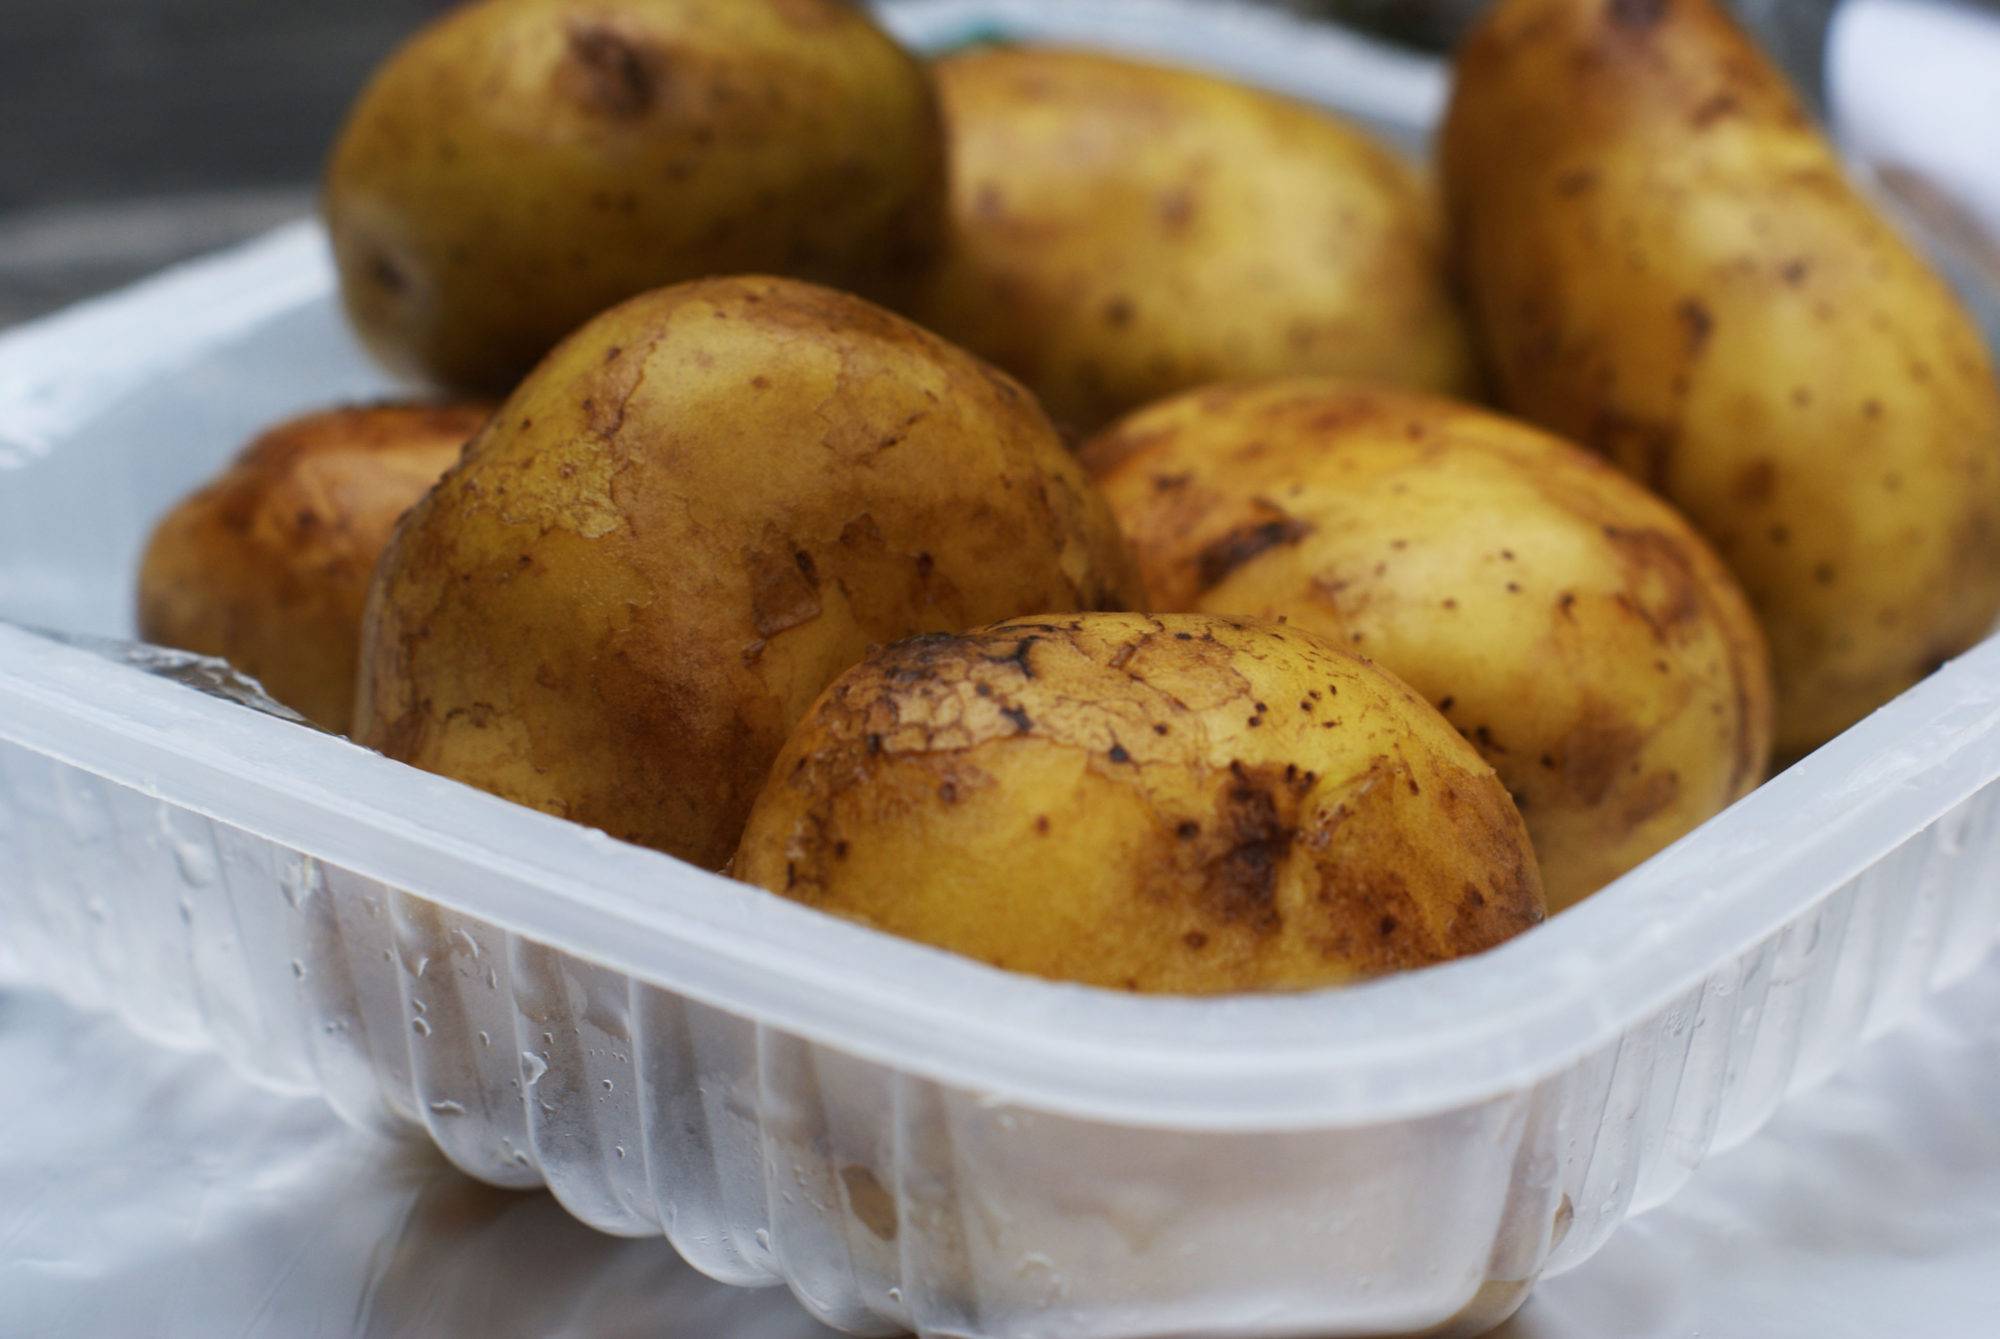 Сколько вымачивать картофель перед приготовлением, чтобы вышел крахмал?